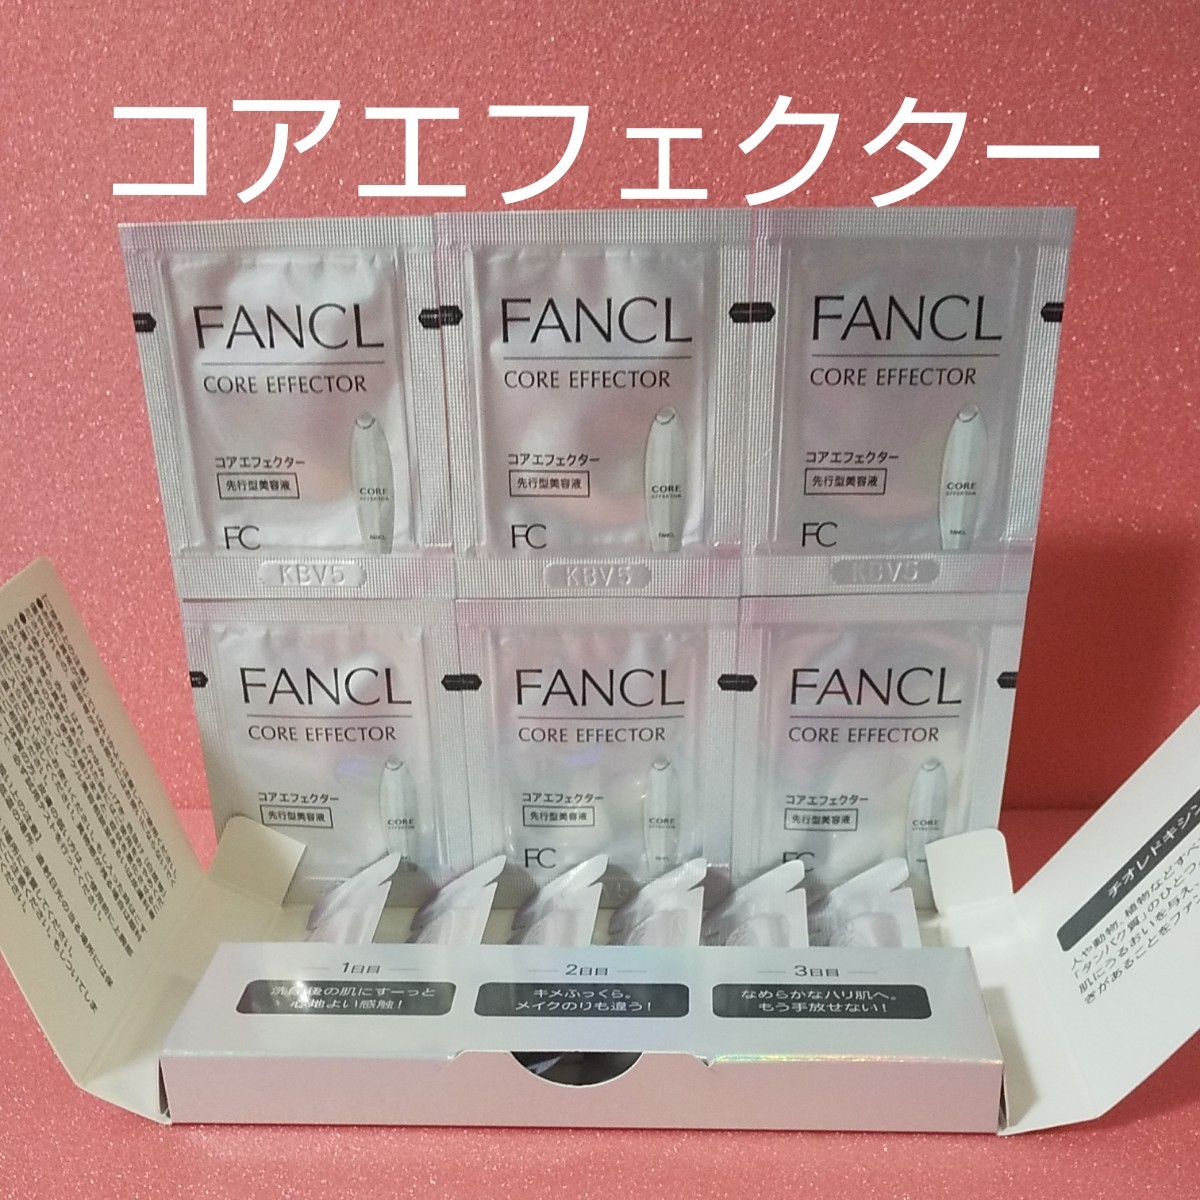 ファンケル FANCL コアエフェクター 先行型 美容液 サンプル